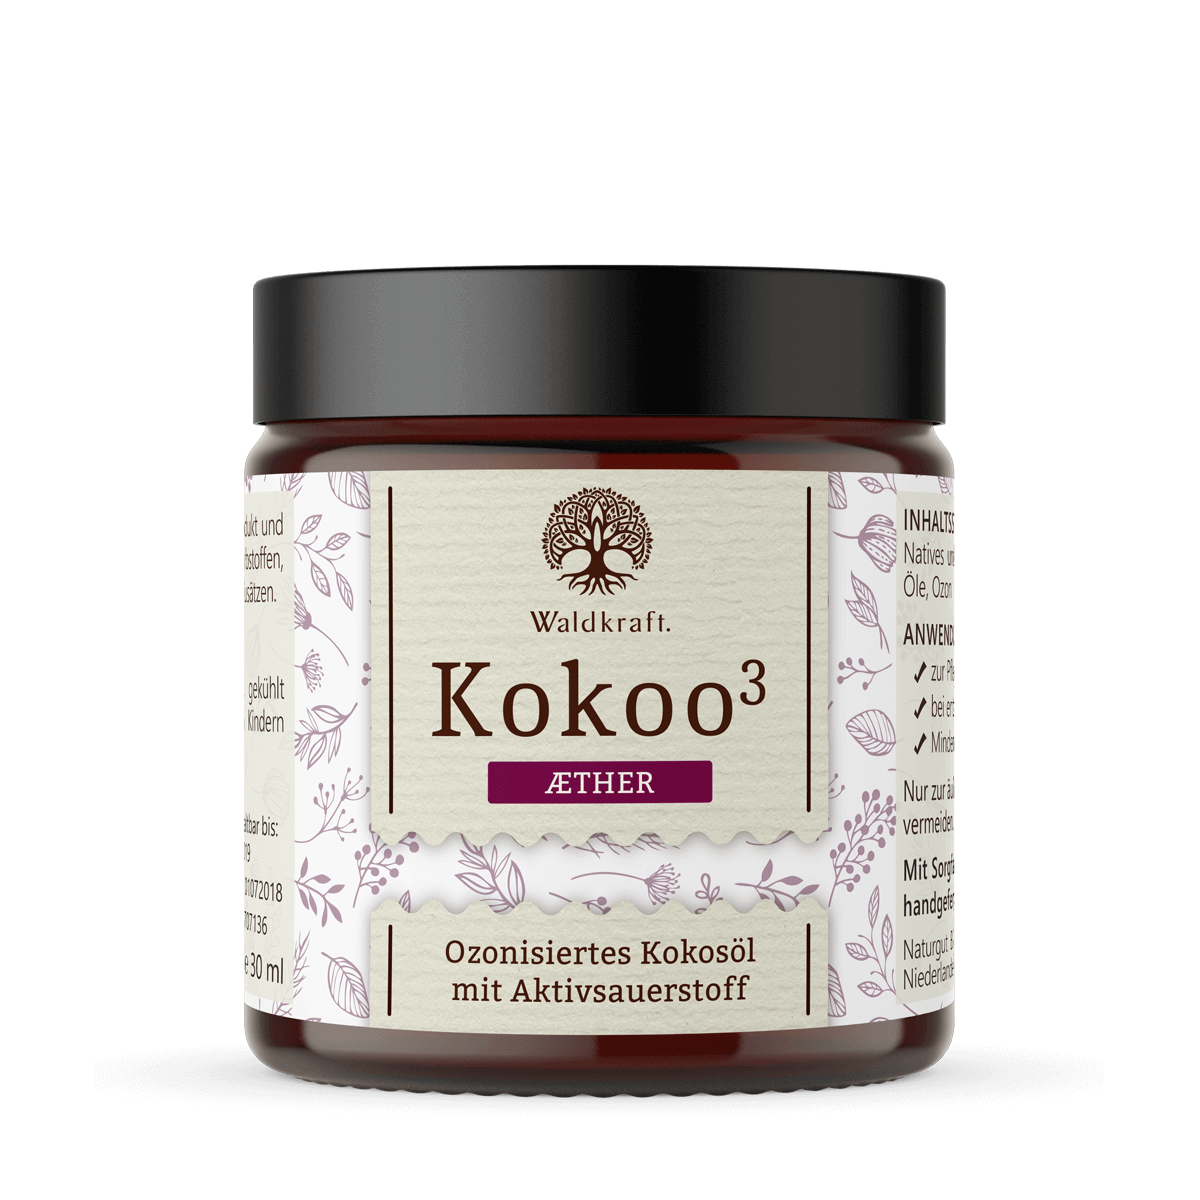 Kokoo3 Aether – Ozonisiertes Kokosöl mit ätherischen Ölen 30 ml